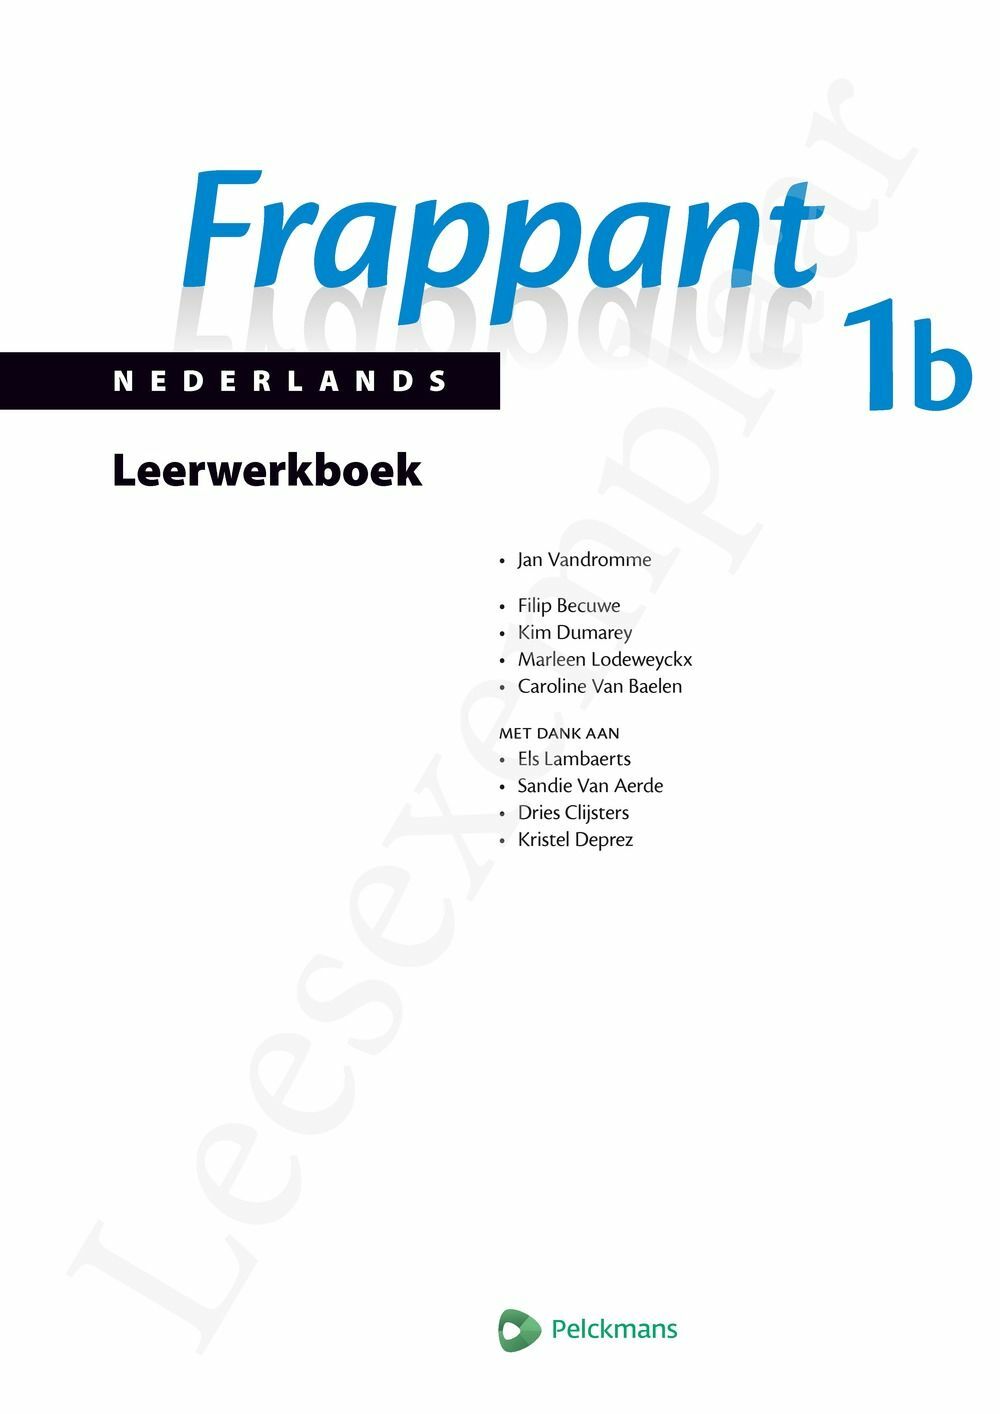 Preview: Frappant Nederlands 1b Leerwerkboek (incl. Pelckmans Portaal)